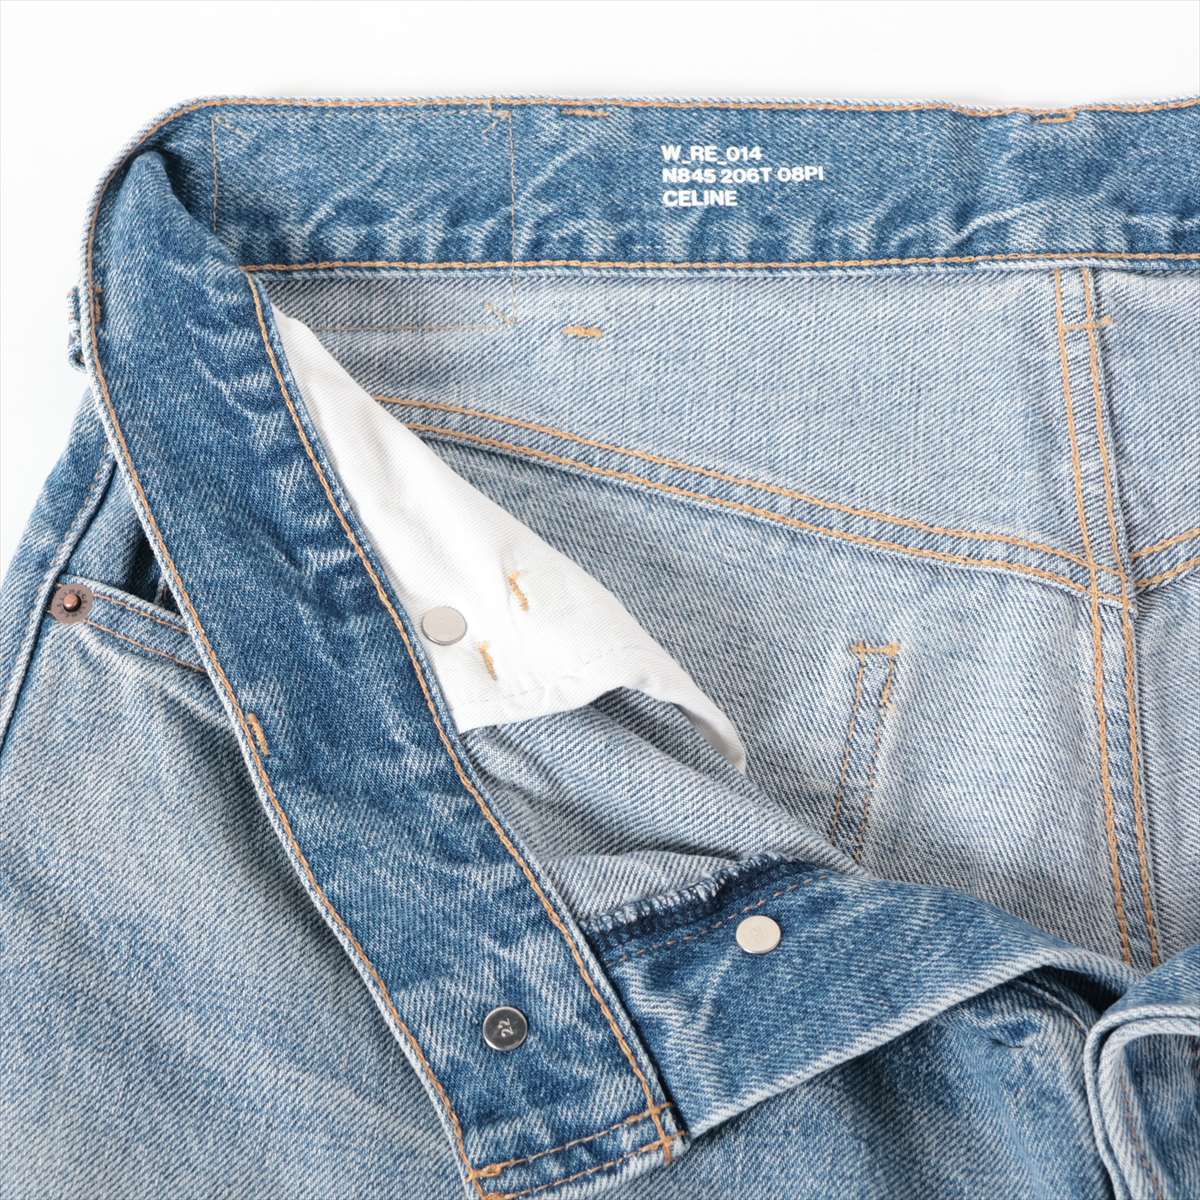 CELINE Eddie period Cotton Denim pants 29 Men's Blue  N845 206T Wesley low rise jeans